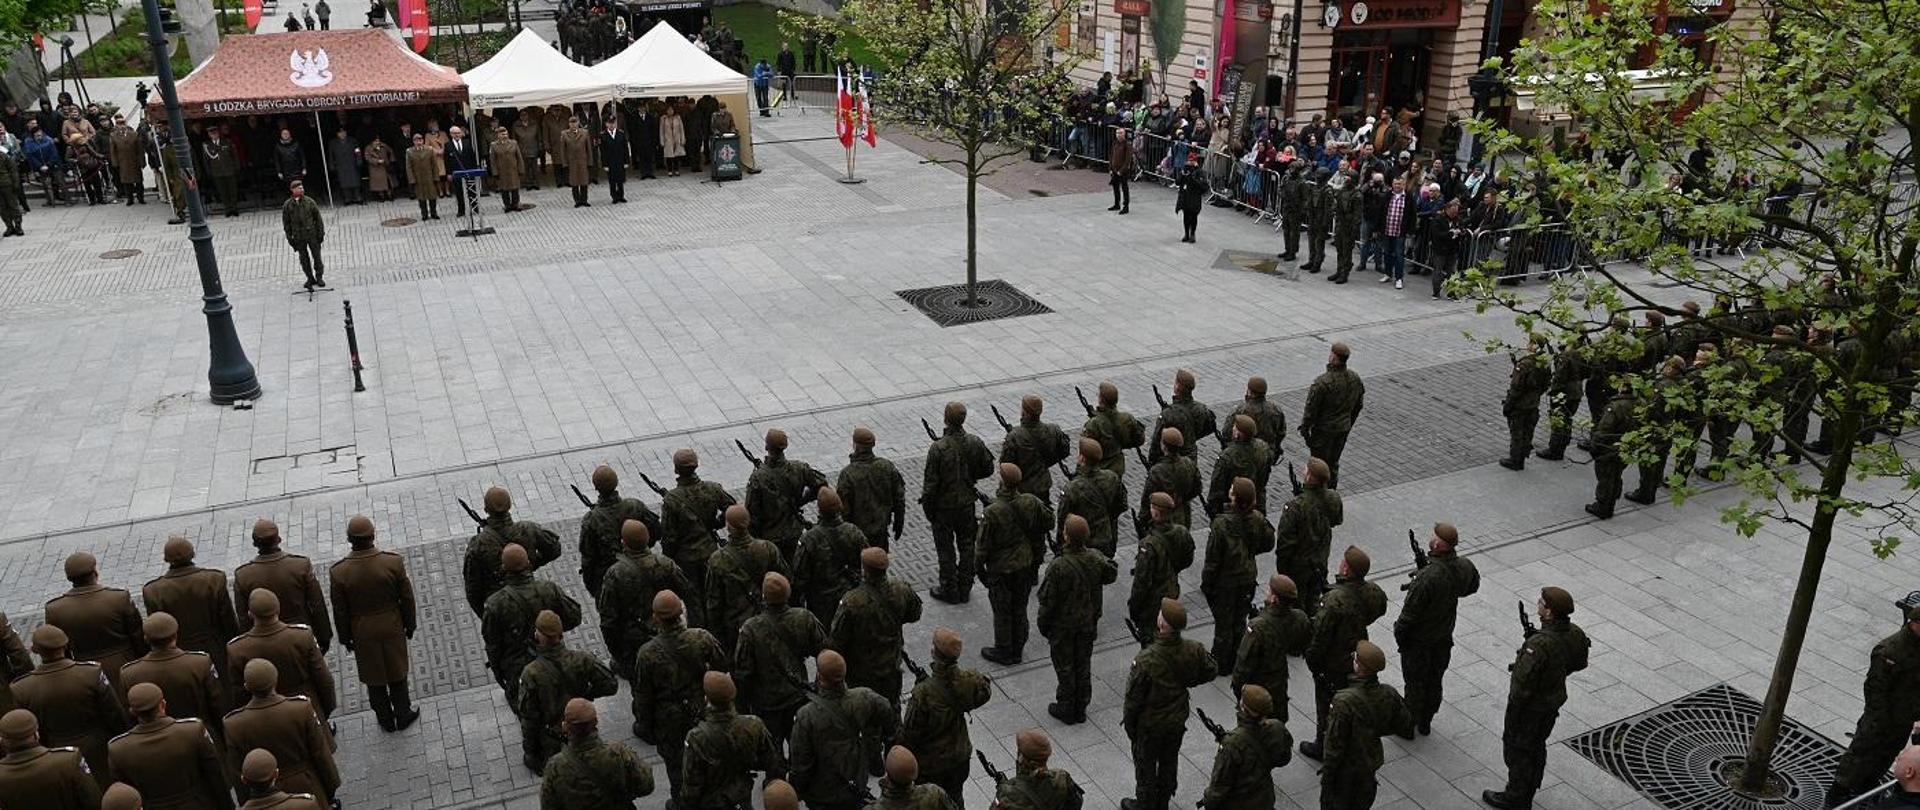 Święto 9 Łódzkiej Brygady Obrony Terytorialnej w Pasażu Schillera w Łodzi 